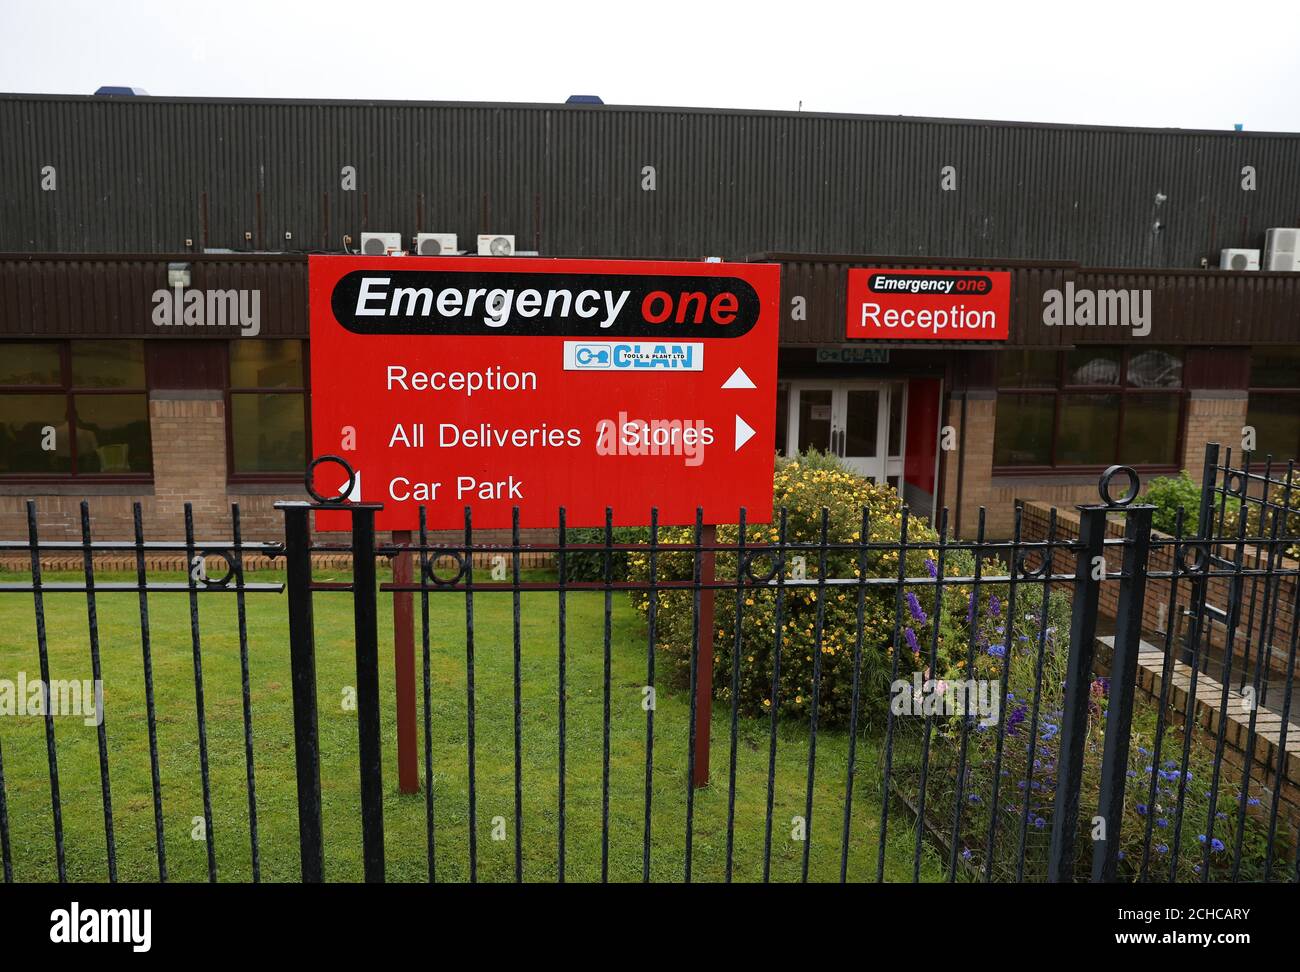 Un point de vue général de Emergency One à Cumnock, l'un des principaux fabricants de véhicules et d'appareils d'incendie, de secours et d'urgence au Royaume-Uni. Banque D'Images